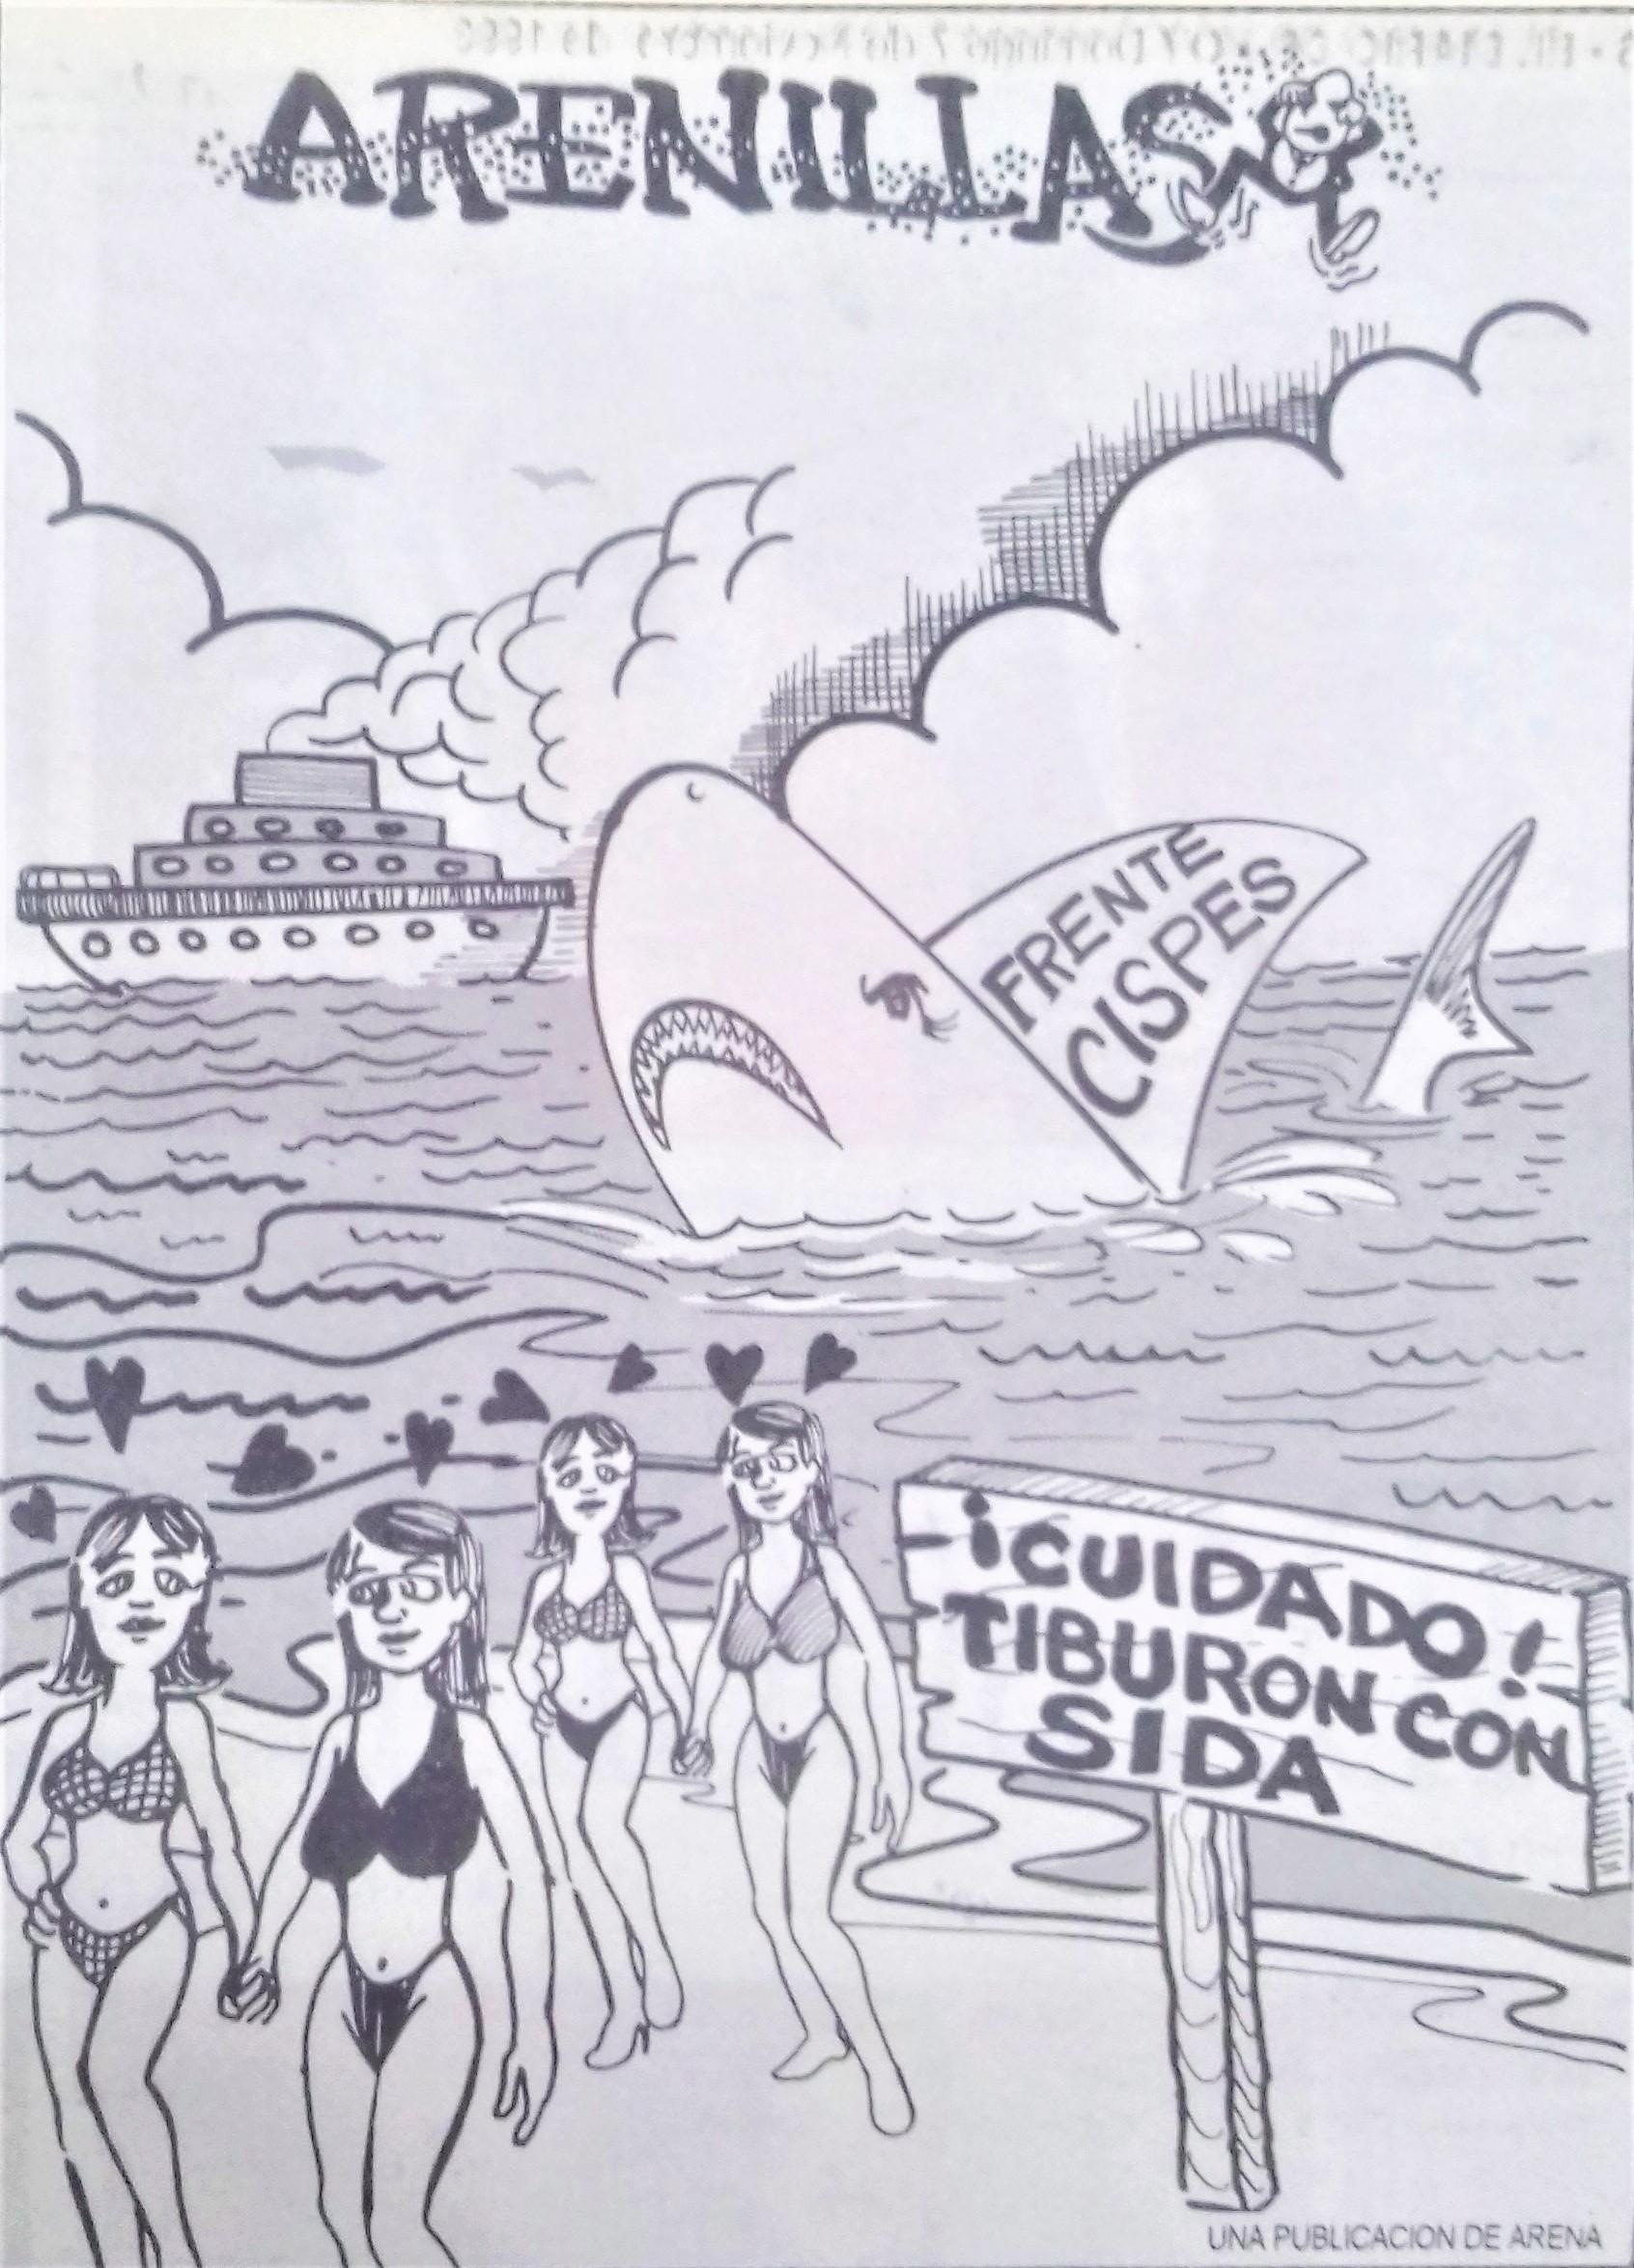 Promoción del escándalo público. Fuente: El Diario de Hoy, 07 de noviembre de 1993. Cortesía de Amaral Arévalo.